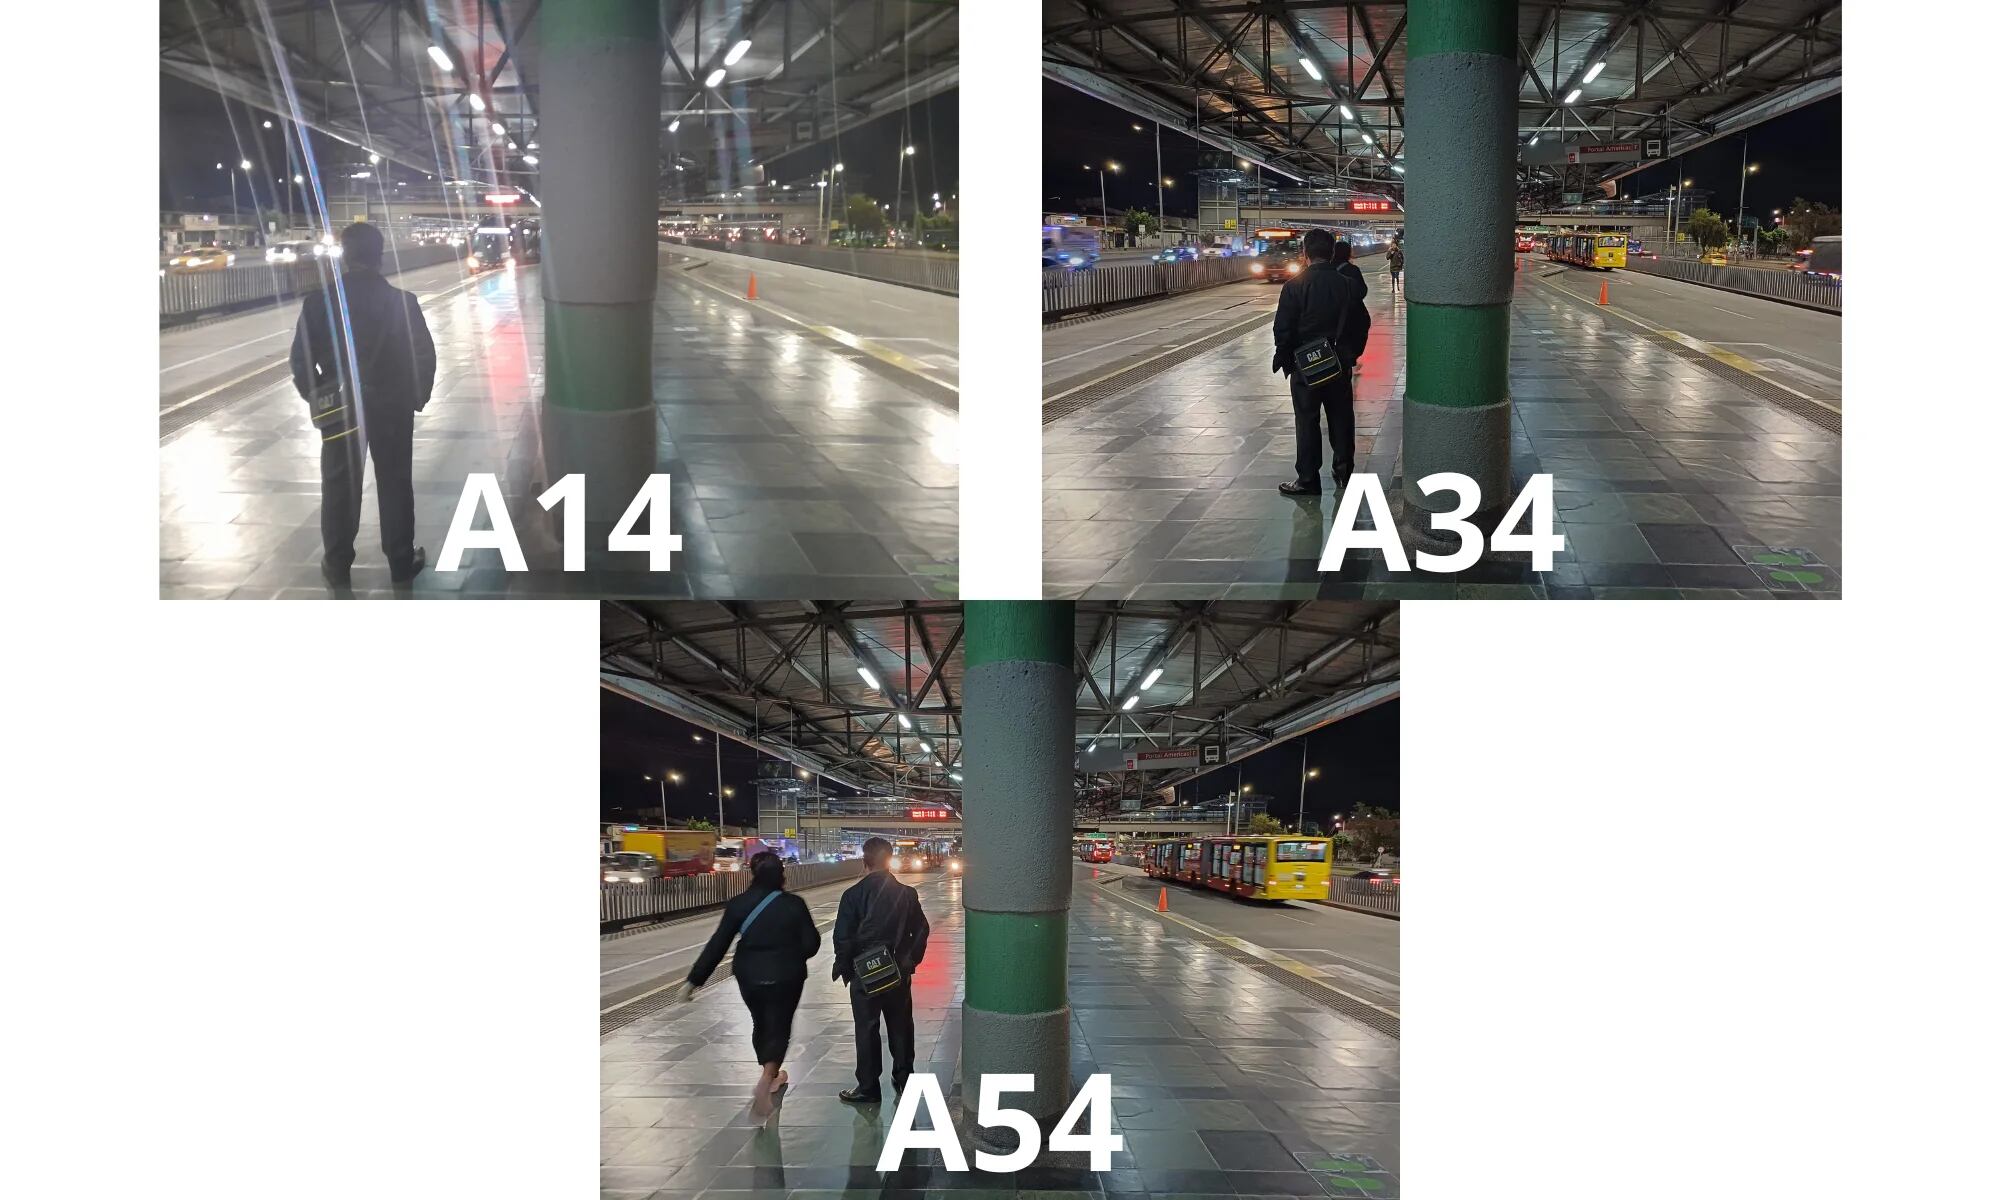 Pusimos a prueba el A14, A34 y A54 en fotografía, rendimiento y videojuegos.